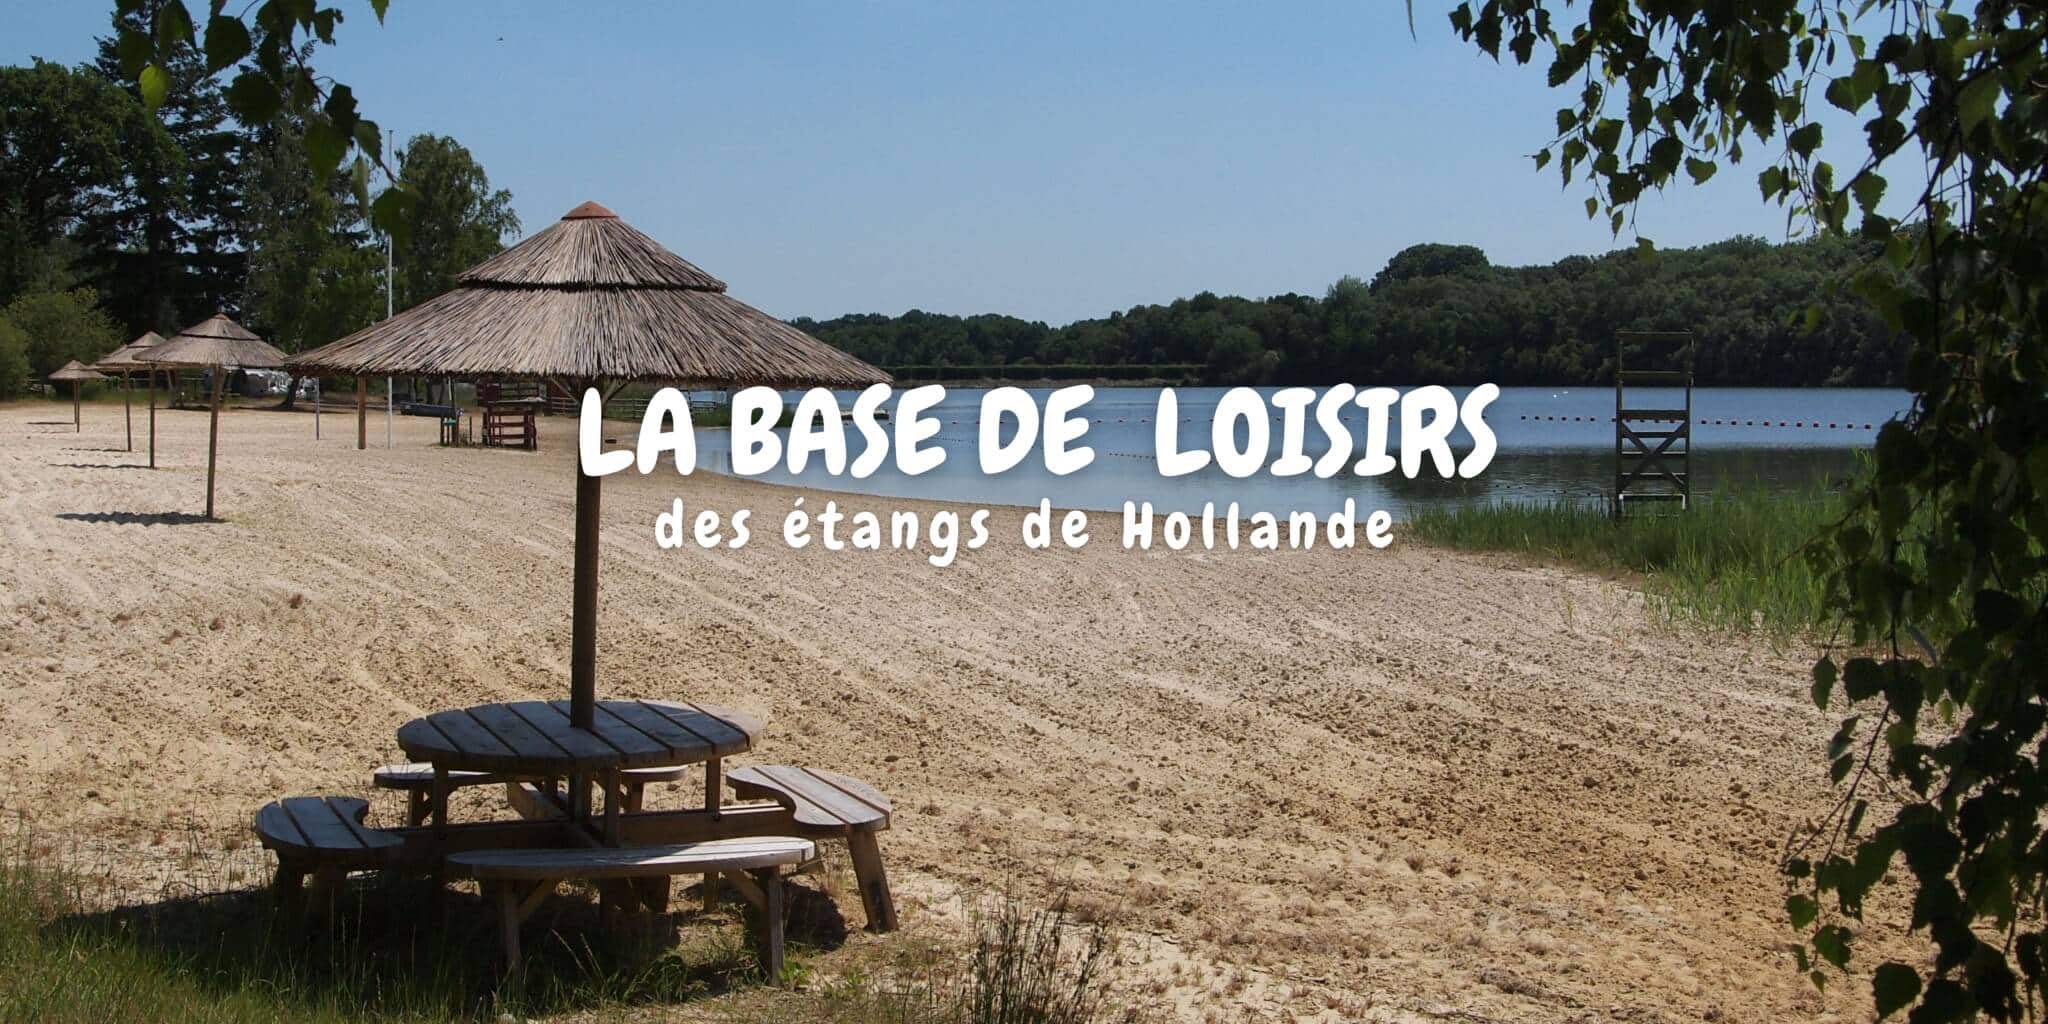 La base de loisirs des étangs de Hollande